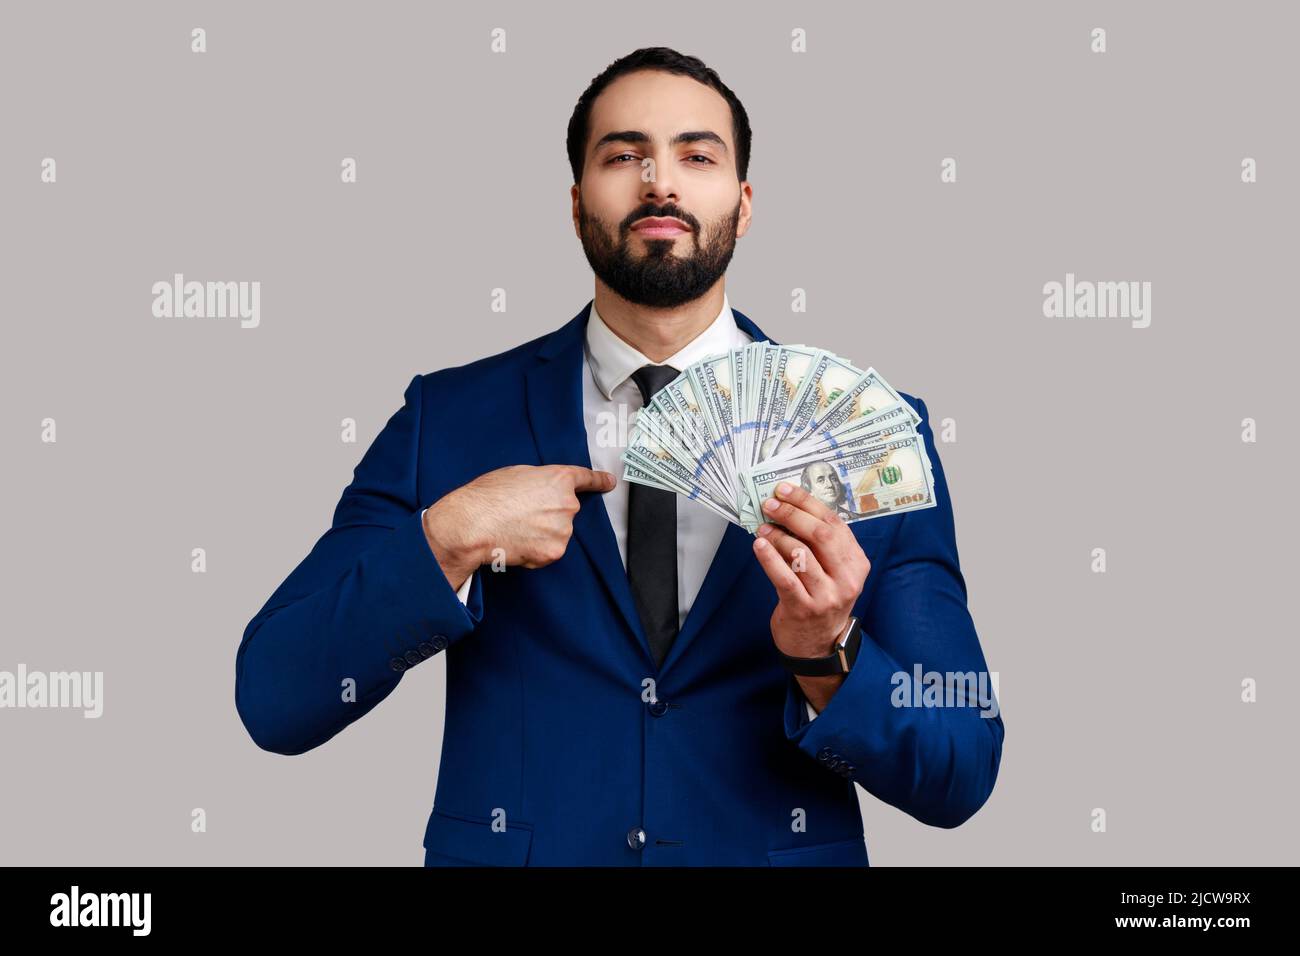 Portrait d'un riche homme d'affaires à la barbe, qui détient des billets de dollars et se pointe avec fierté, portant un costume de style officiel. Prise de vue en studio isolée sur fond gris. Banque D'Images